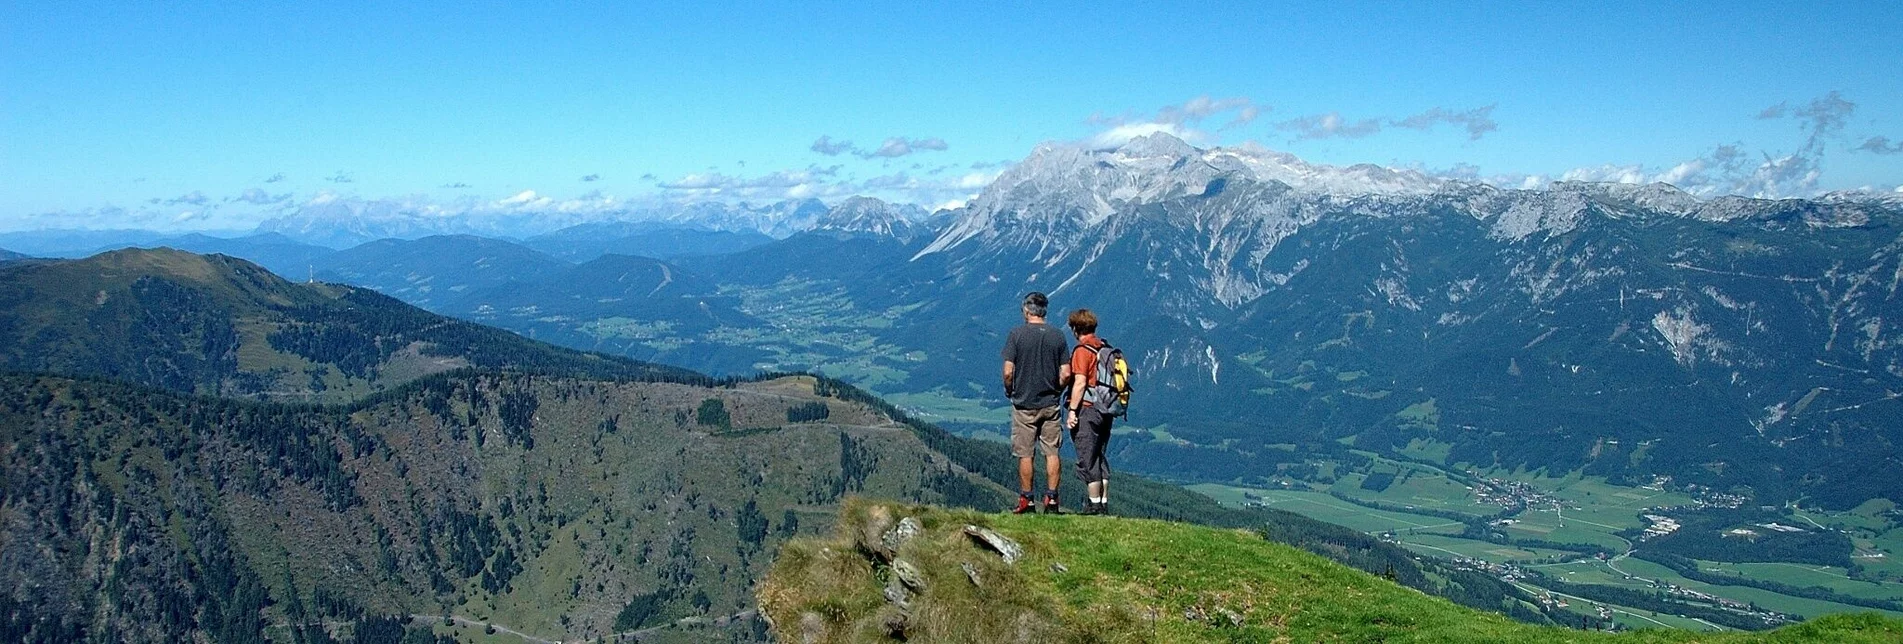 Hiking route Pleschnitzzinken 2.112 m - Touren-Impression #1 | © Erlebnisregion Schladming-Dachstein